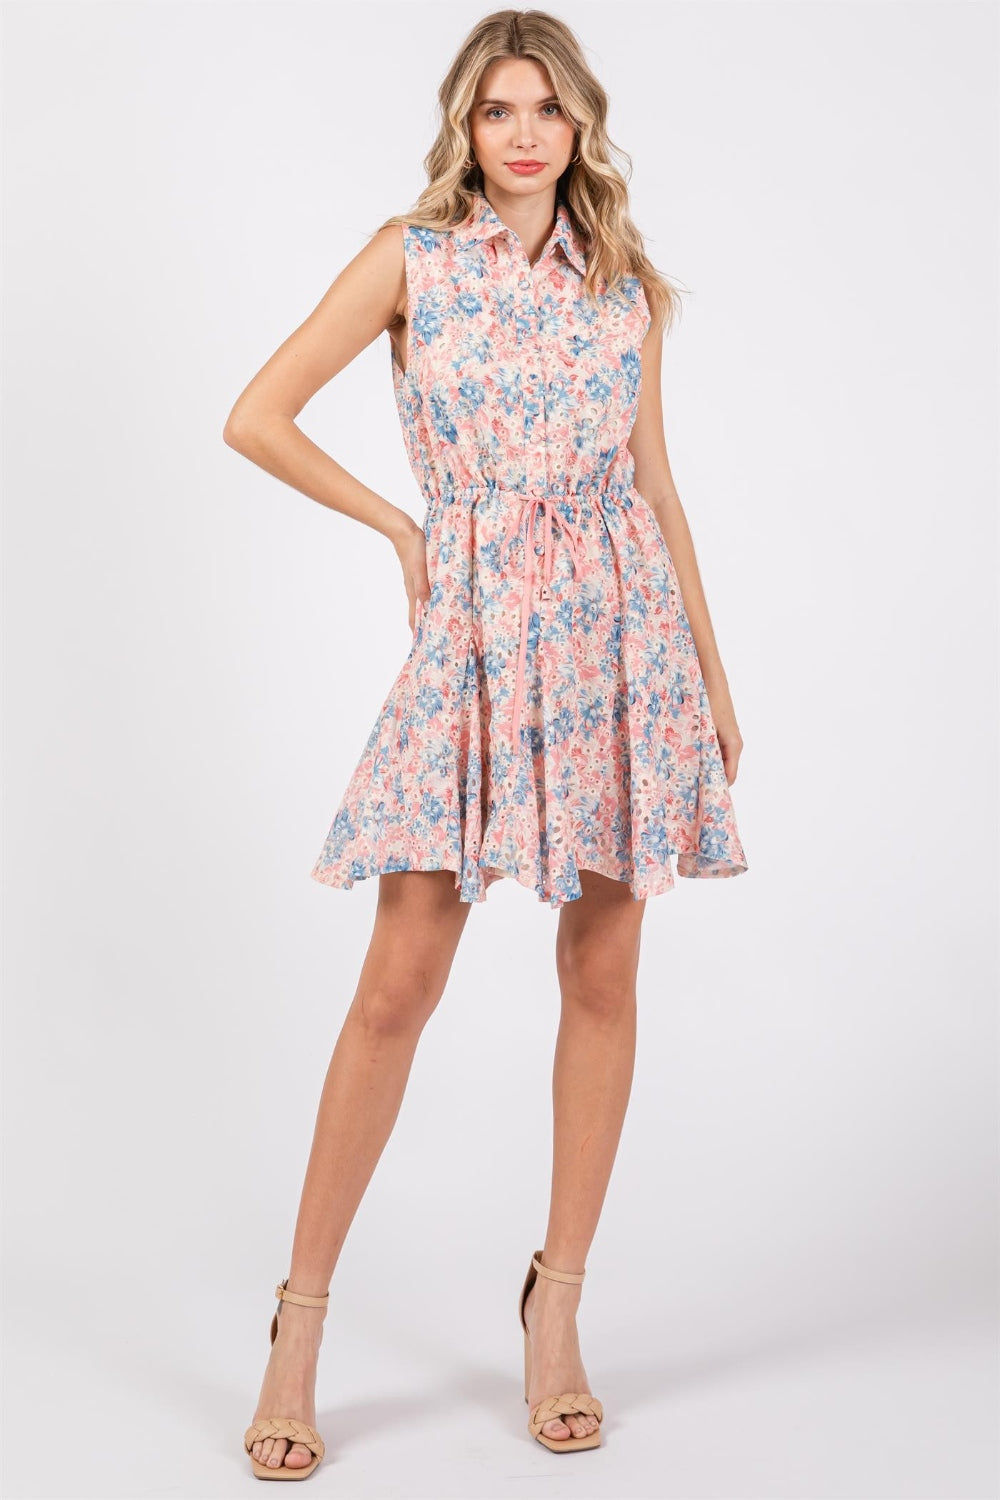 GeeGee Full Size Floral Eyelet Sleeveless Mini Dress  | KIKI COUTURE